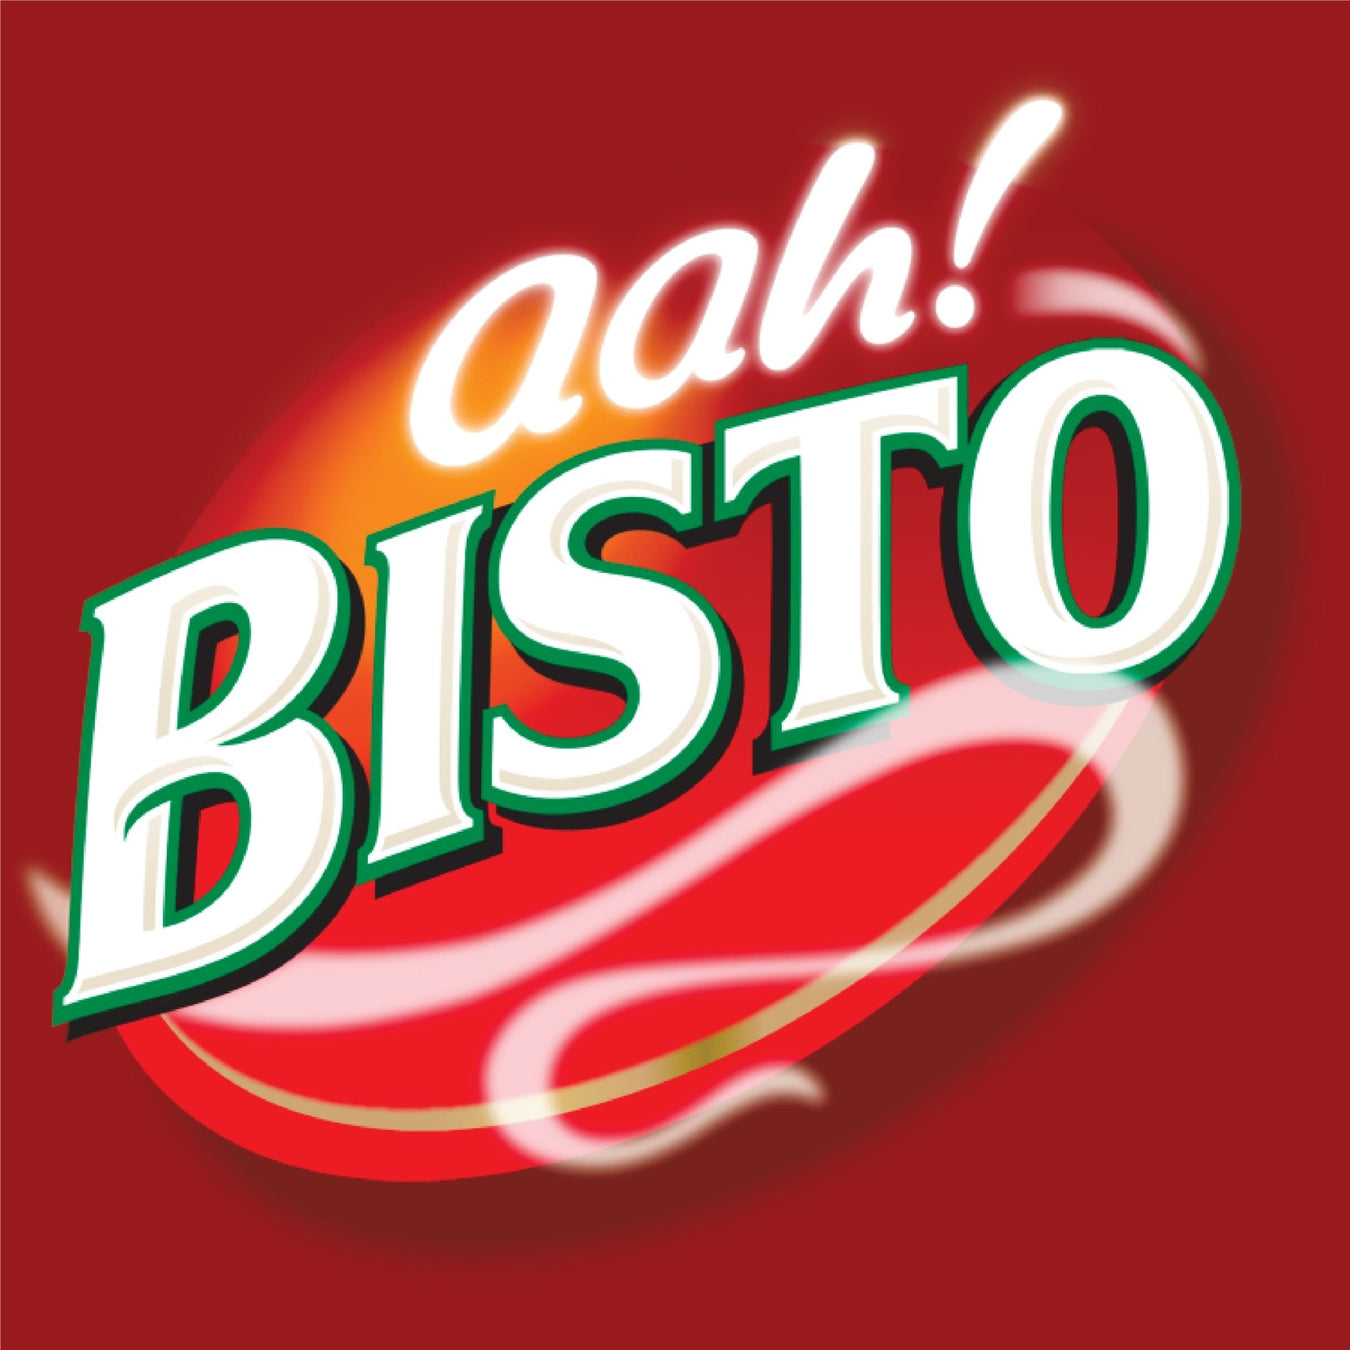 Bisto - The Great British Shop